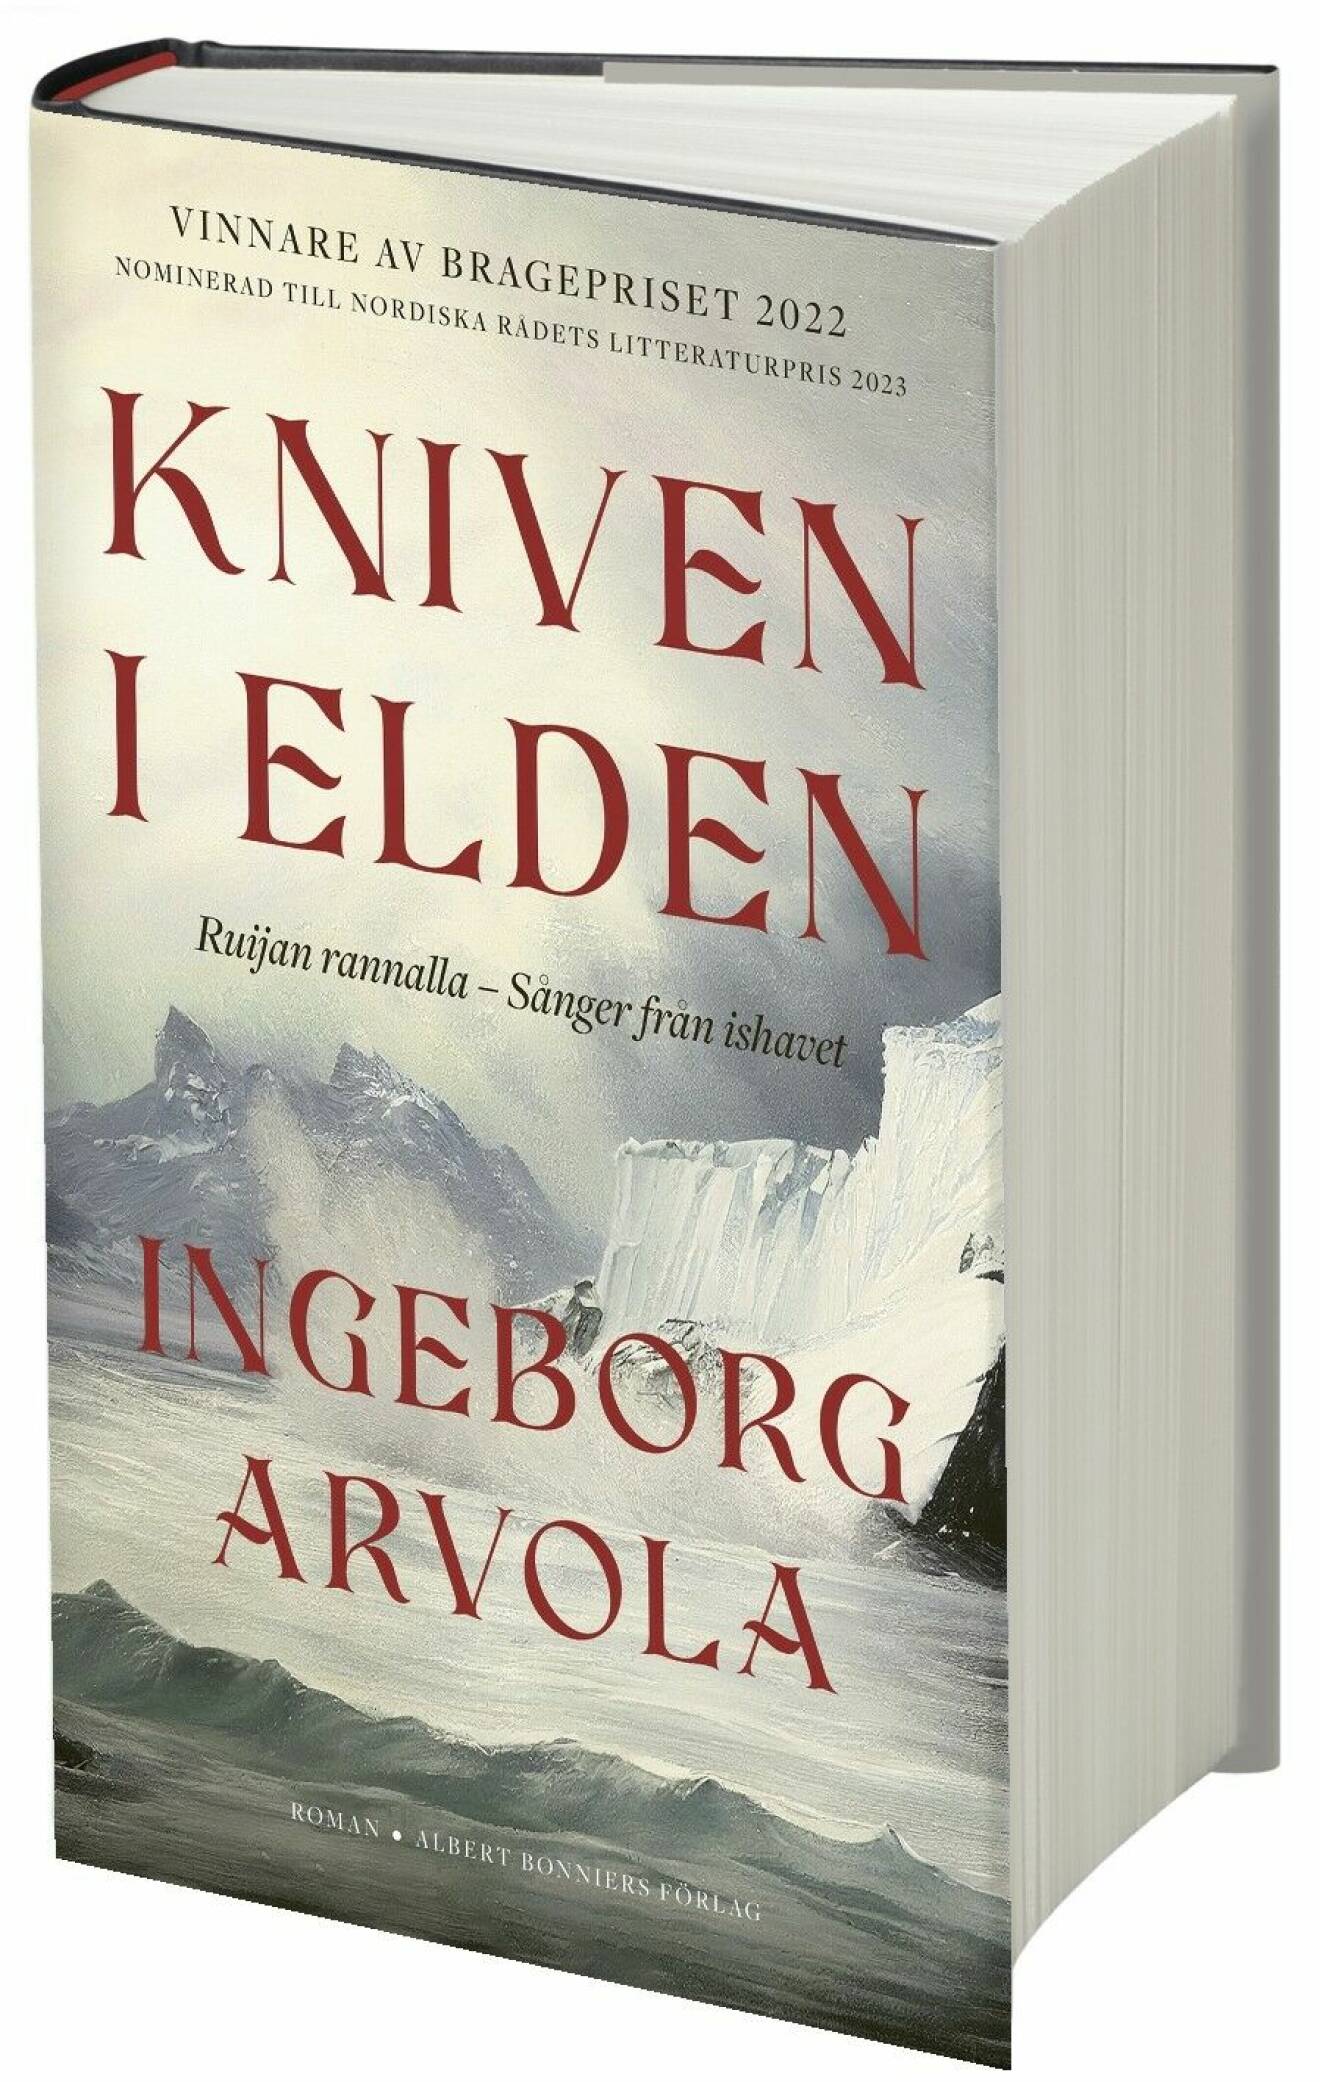 Kniven i elden av Ingeborg Arvola (Albert Bonniers förlag).